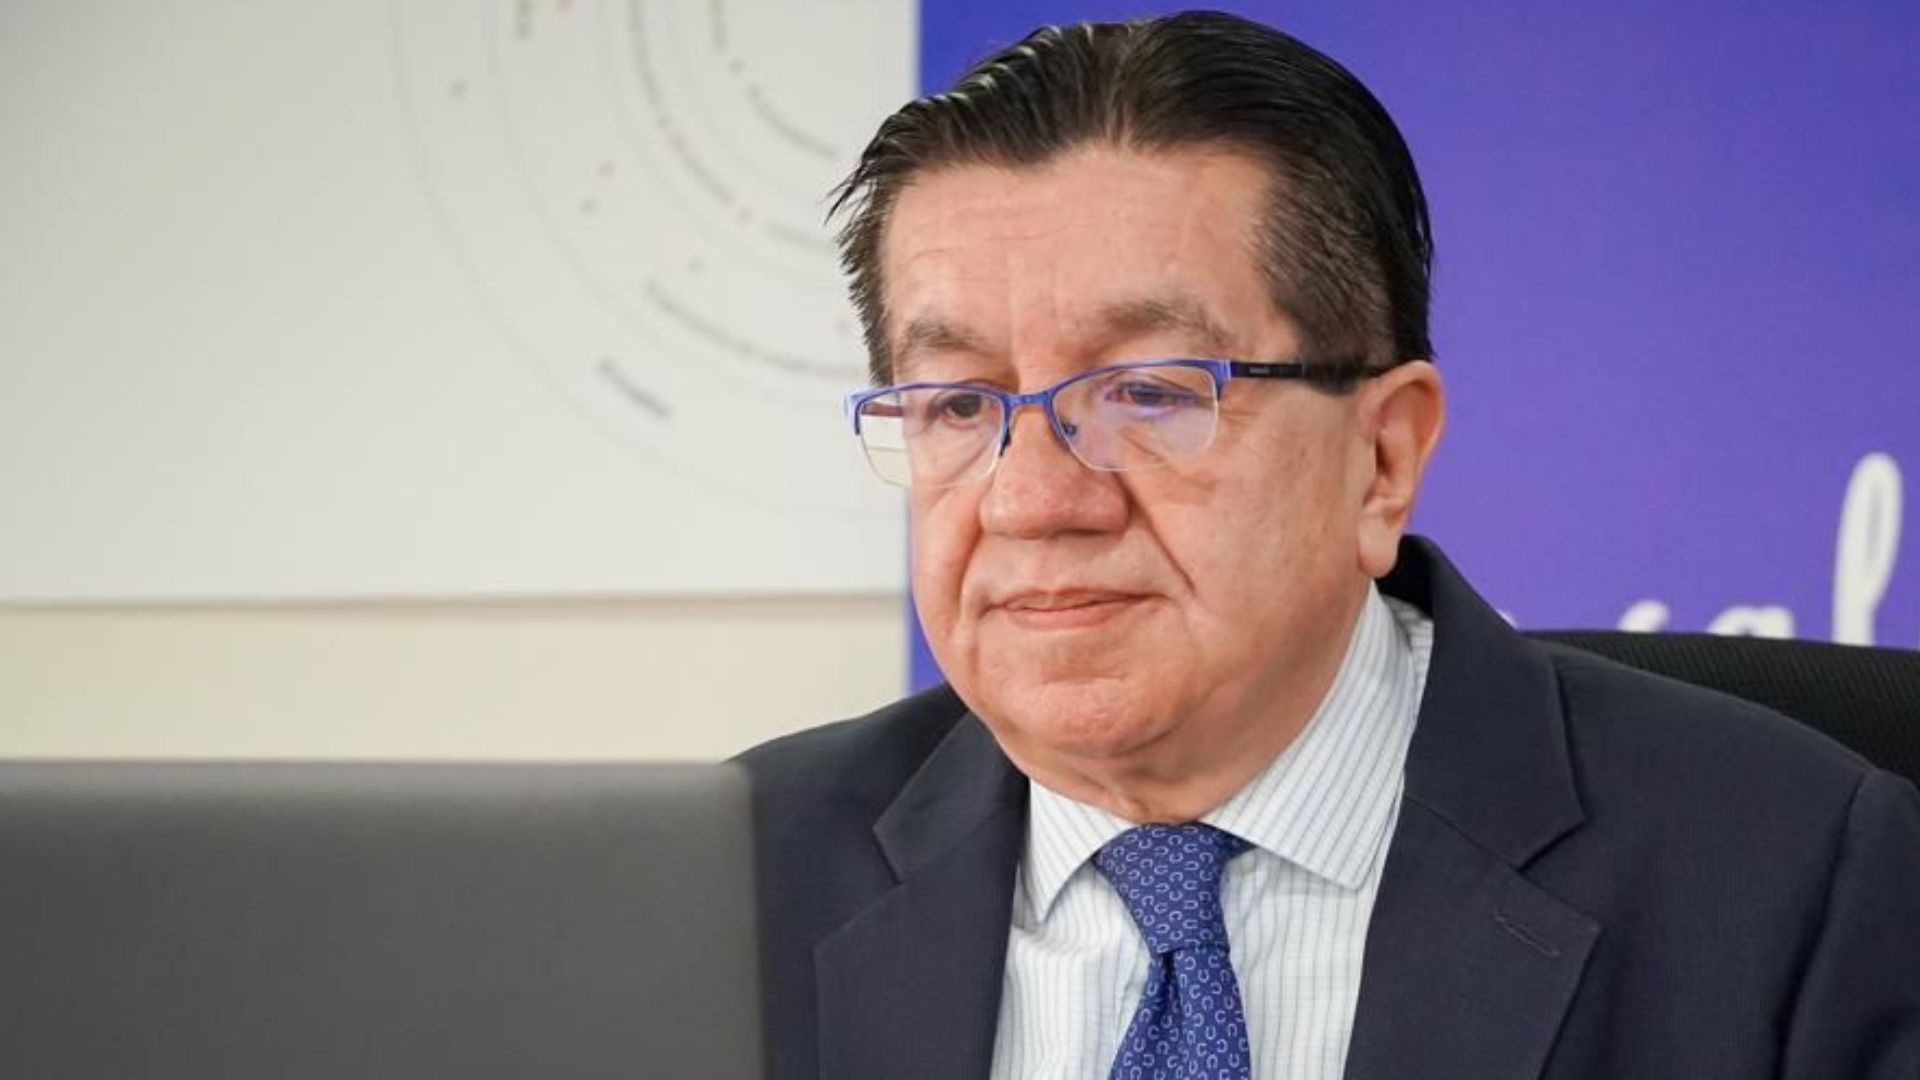 En la foto, el exministro de Salud de Colombia, Fernando Ruiz.
Foto: Ministerio de Salud de Colombia